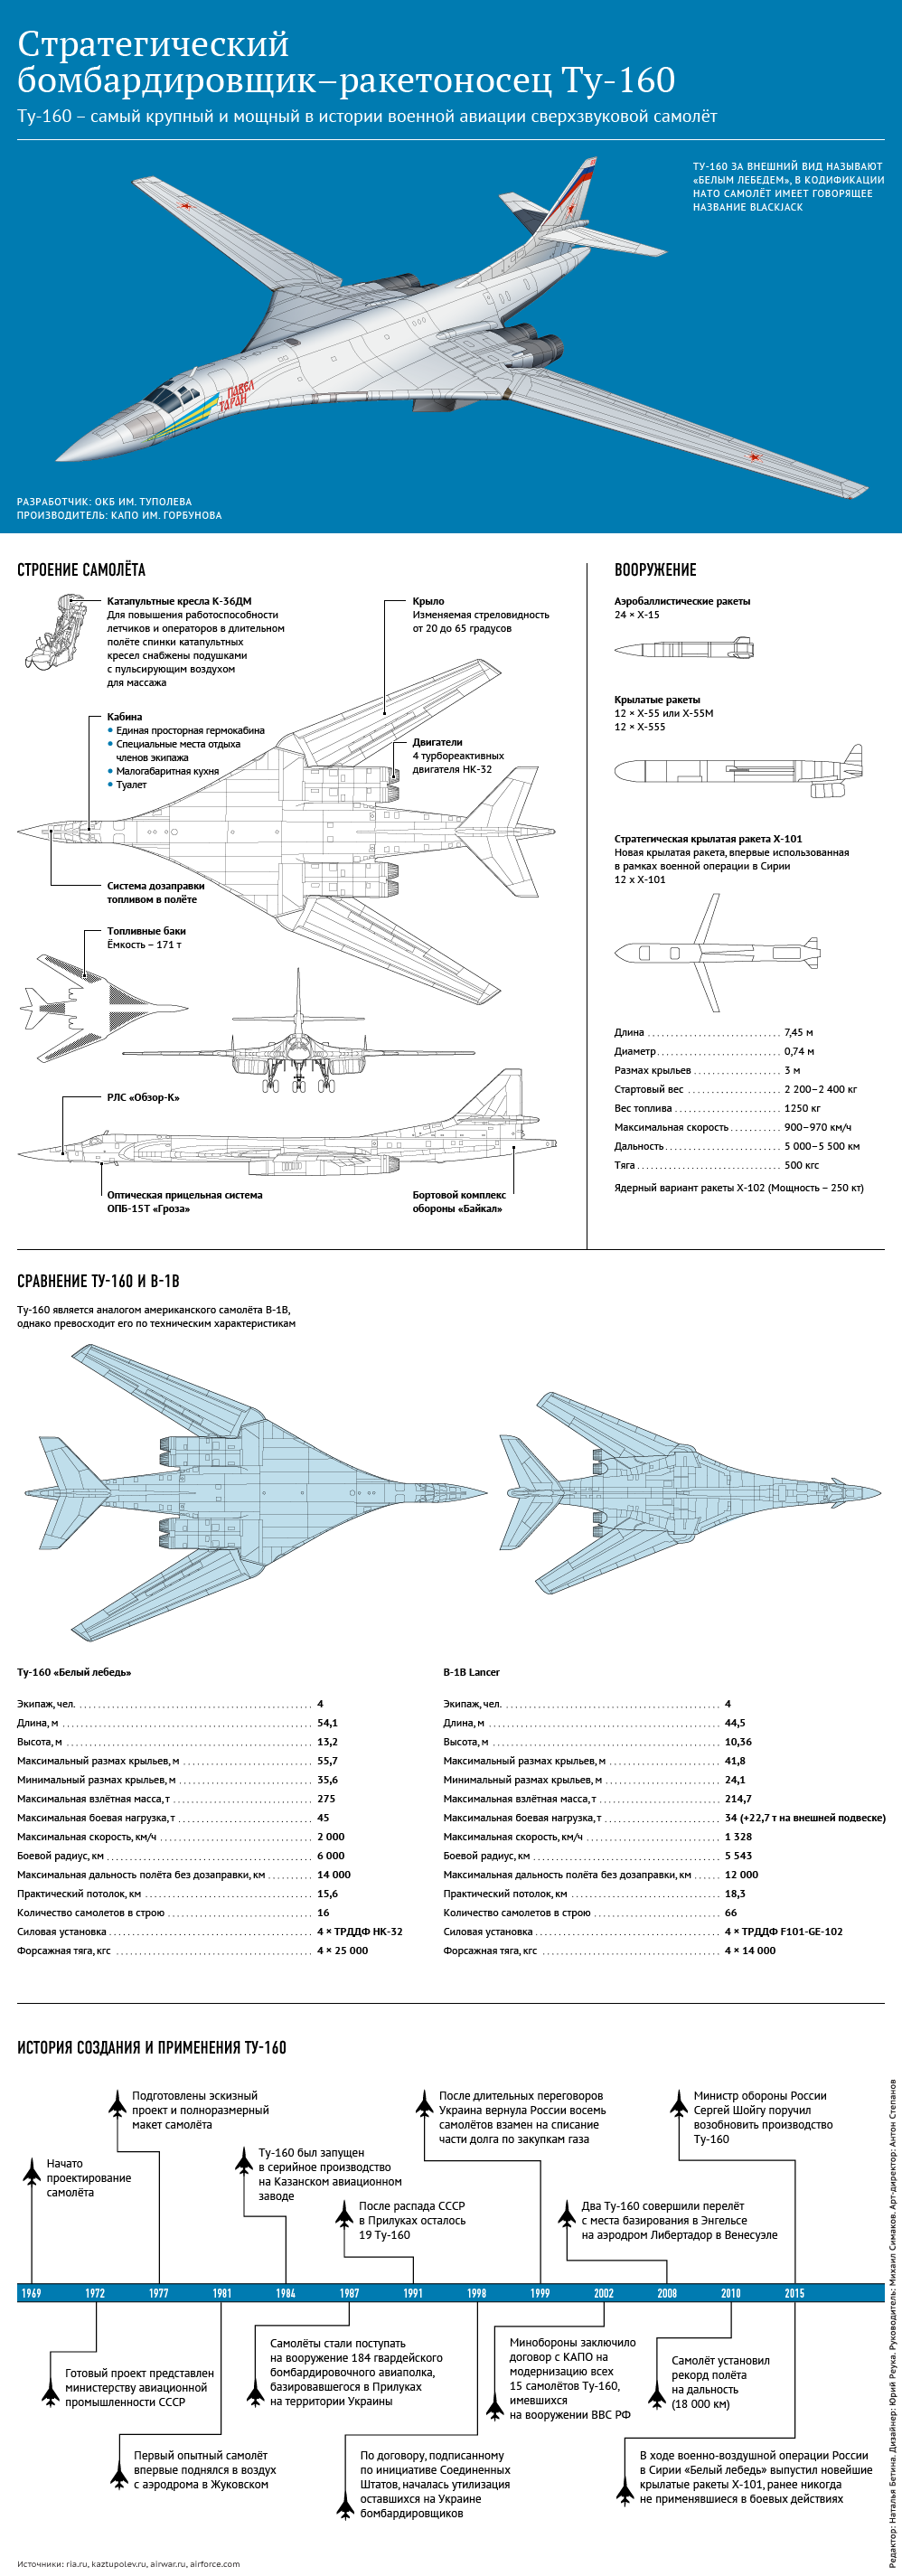 Стратегический ракетоносец-бомбардировщик ту-160 «белый лебедь»